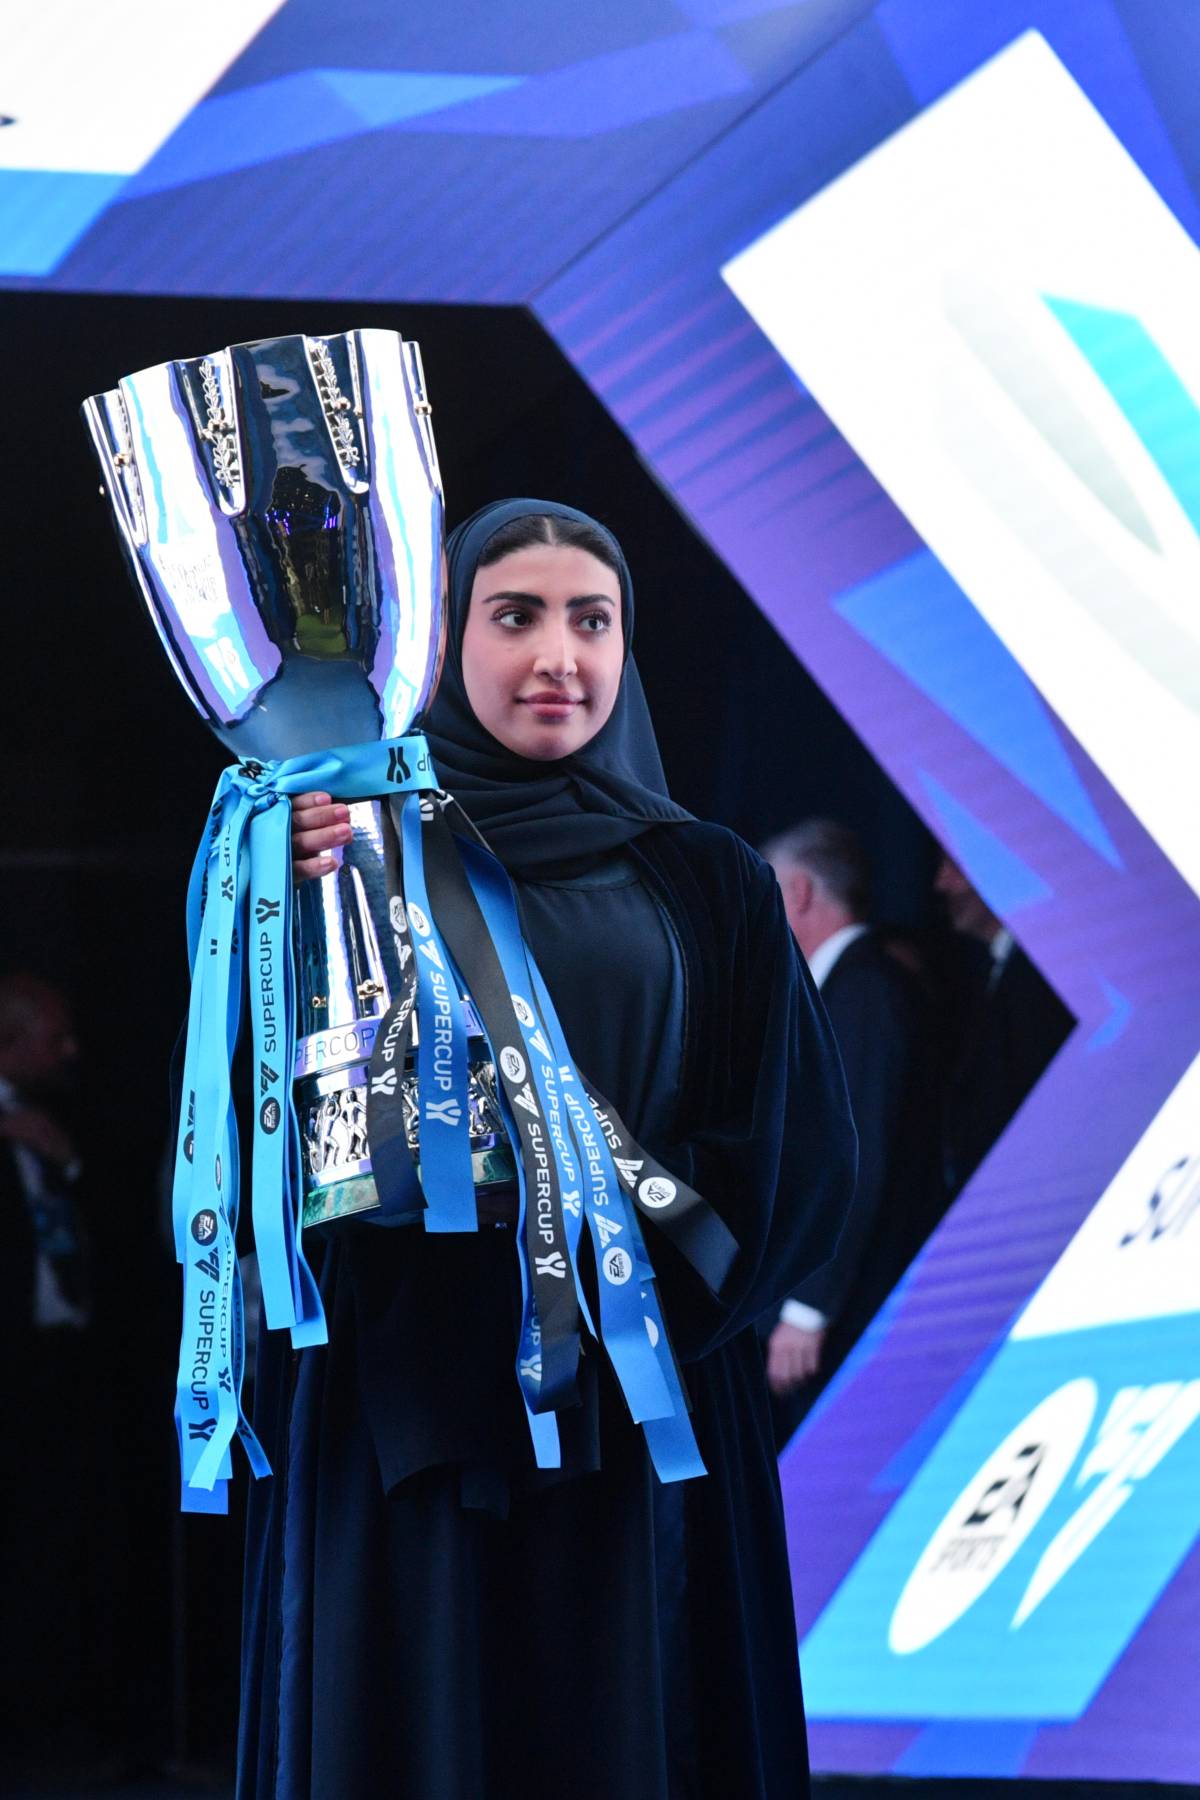 "Quel velo islamico simbolo di oppressione": bufera prima della Supercoppa: cosa è successo